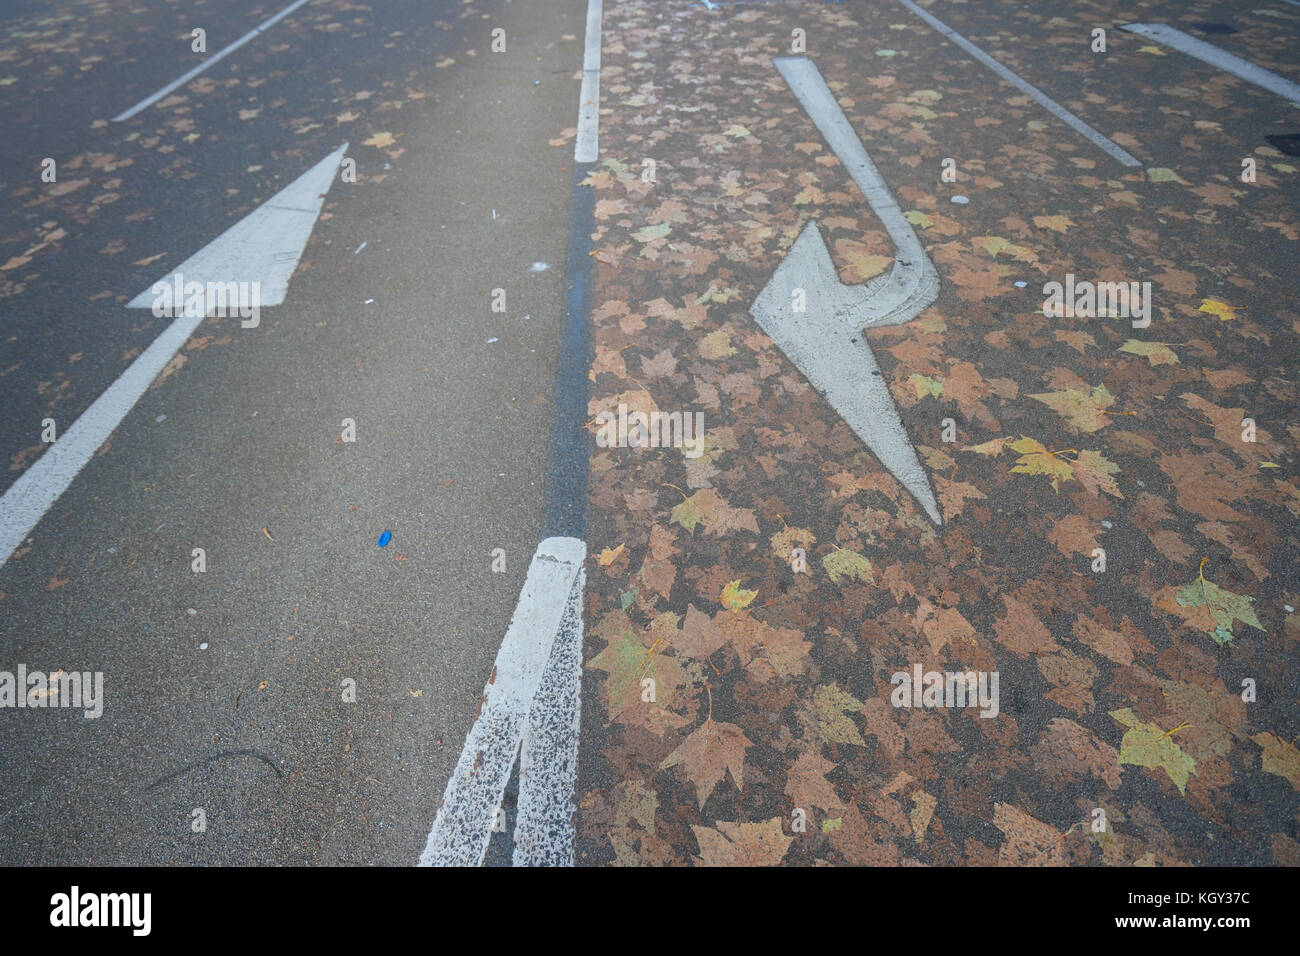 Luci per la circolazione su strada i contrassegni e foglie di autunno su una strada di Londra. photo Data: giovedì, 9 novembre 2017. foto: roger garfield/alamy Foto Stock